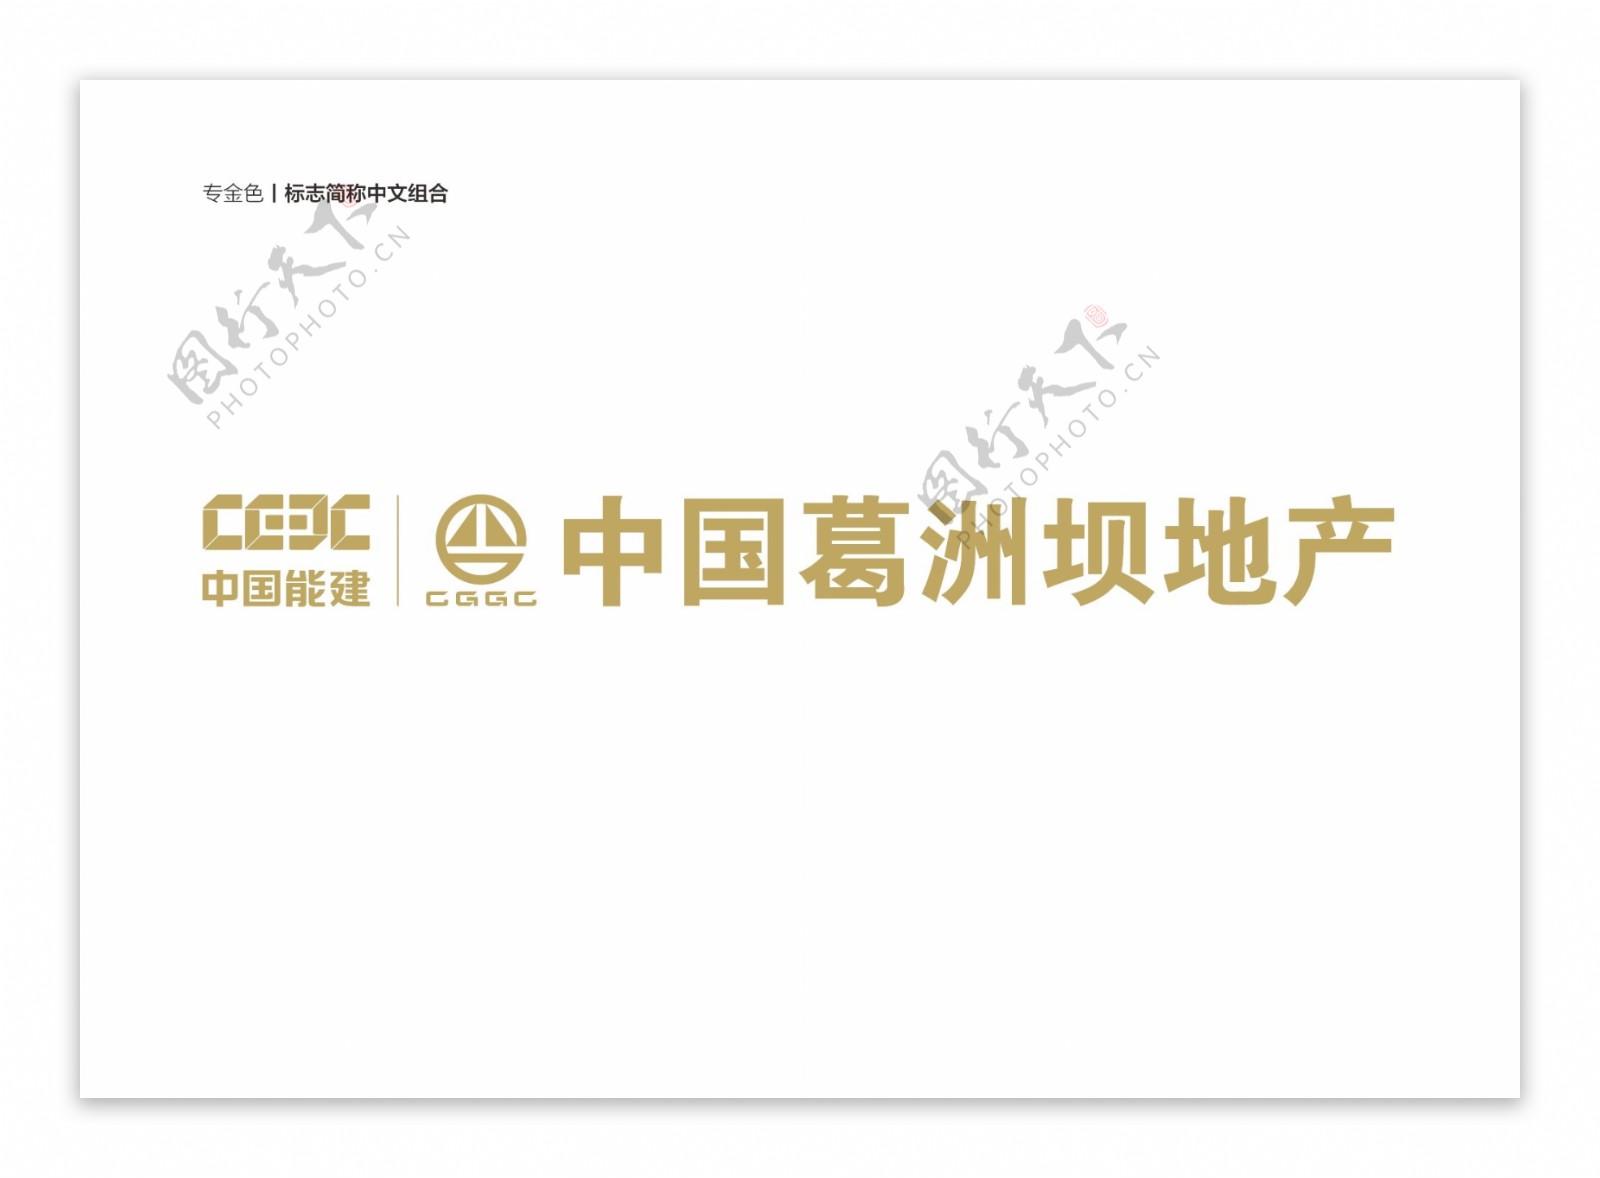 葛洲坝地产logo金色标志中文组合